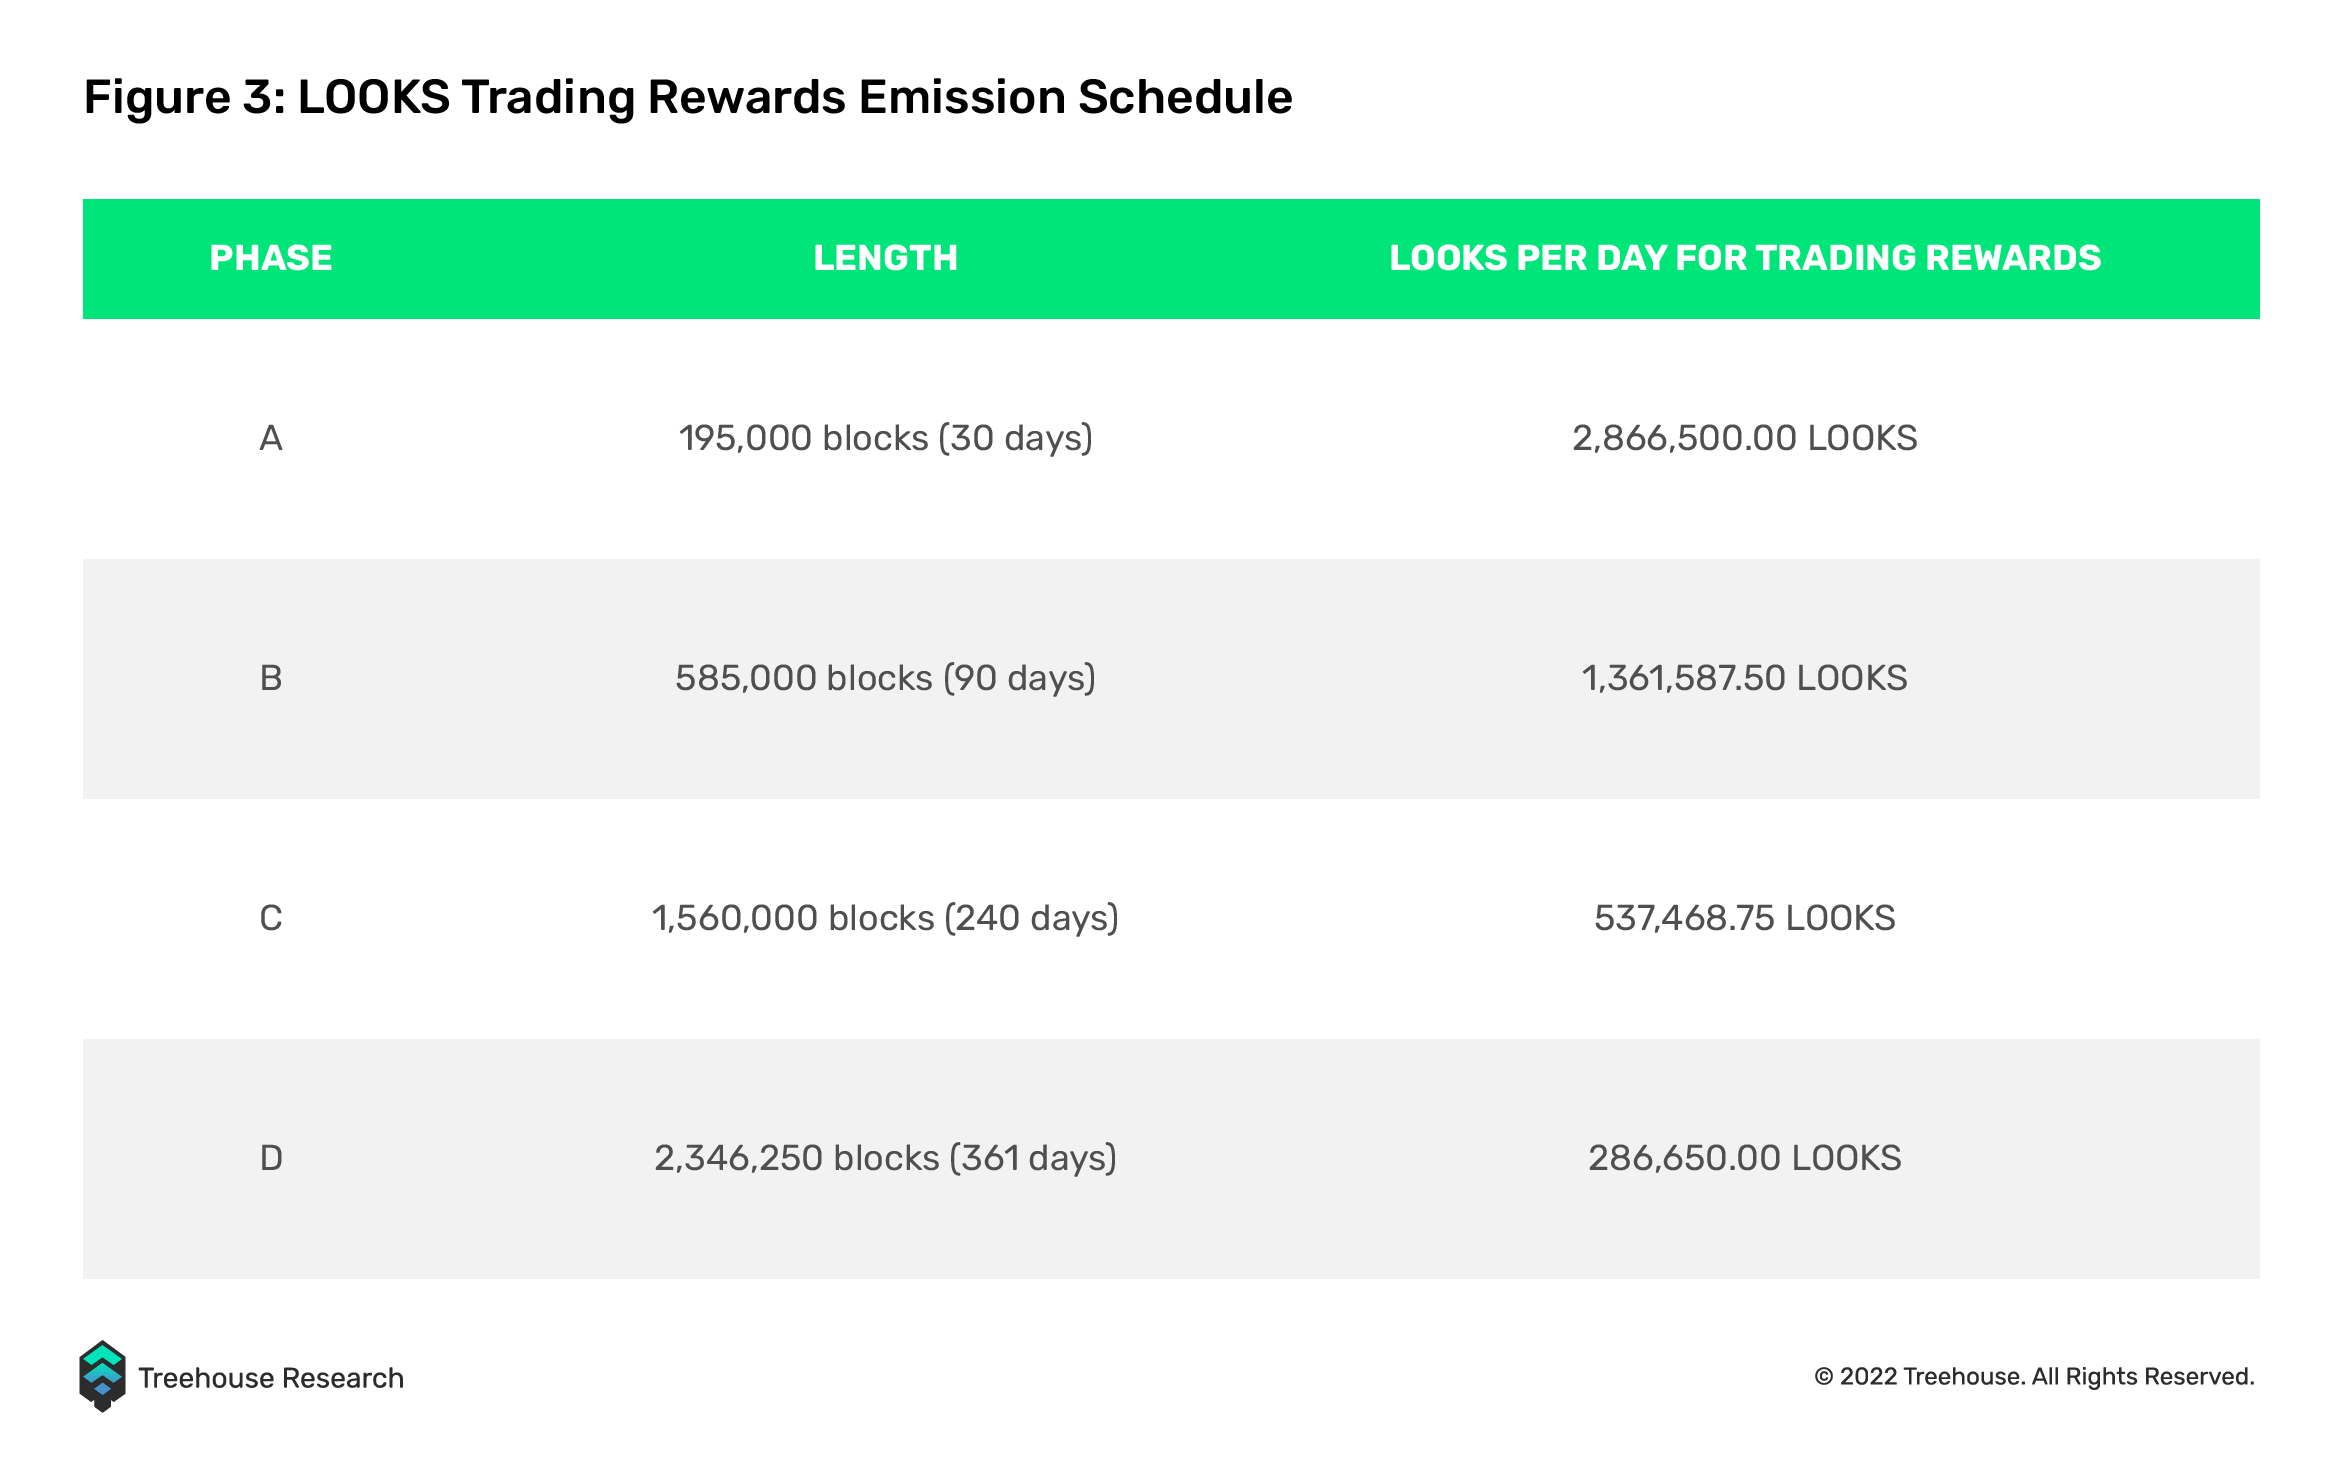 LOOKS trading rewards emission schedule